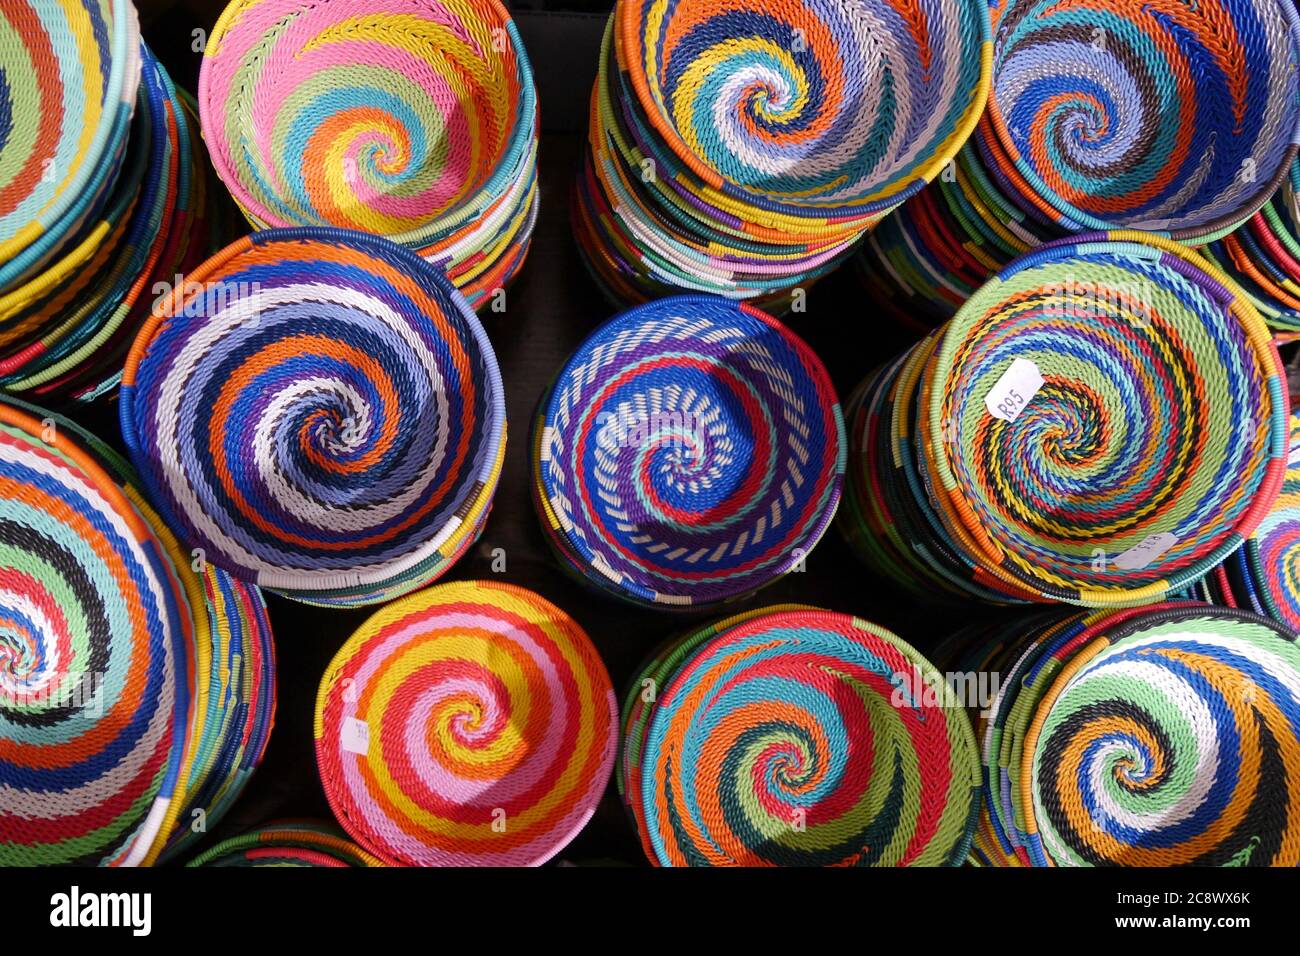 Gros plan sur des paniers souvenirs colorés faits à la main à motifs colorés Banque D'Images